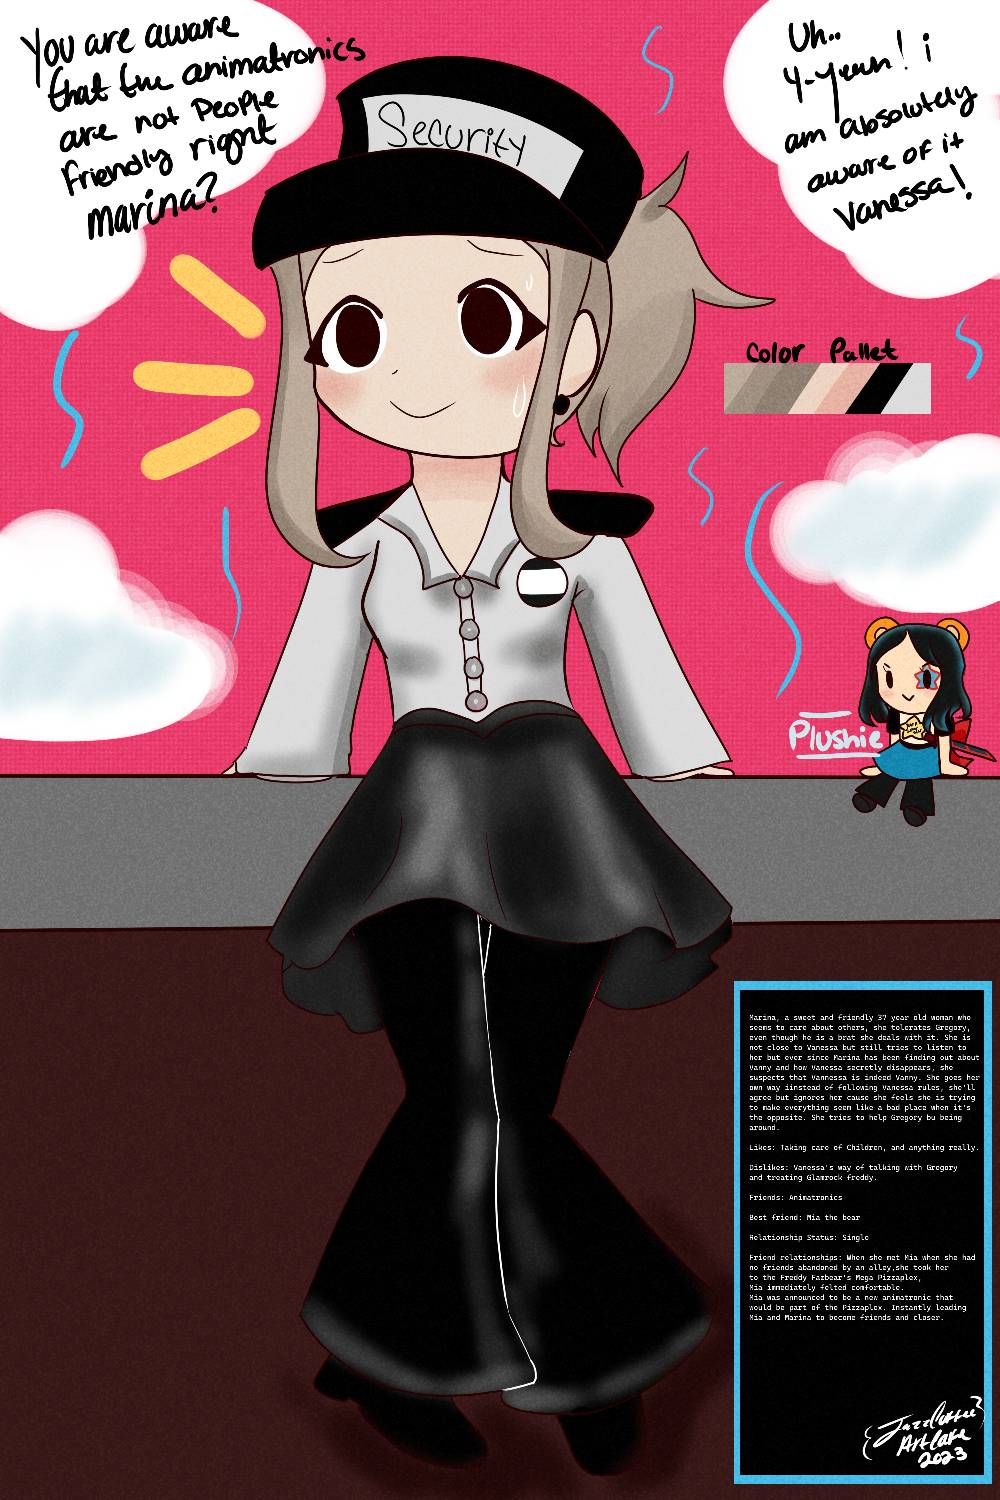 Bonnie anime fnaf by yaita-chan on DeviantArt